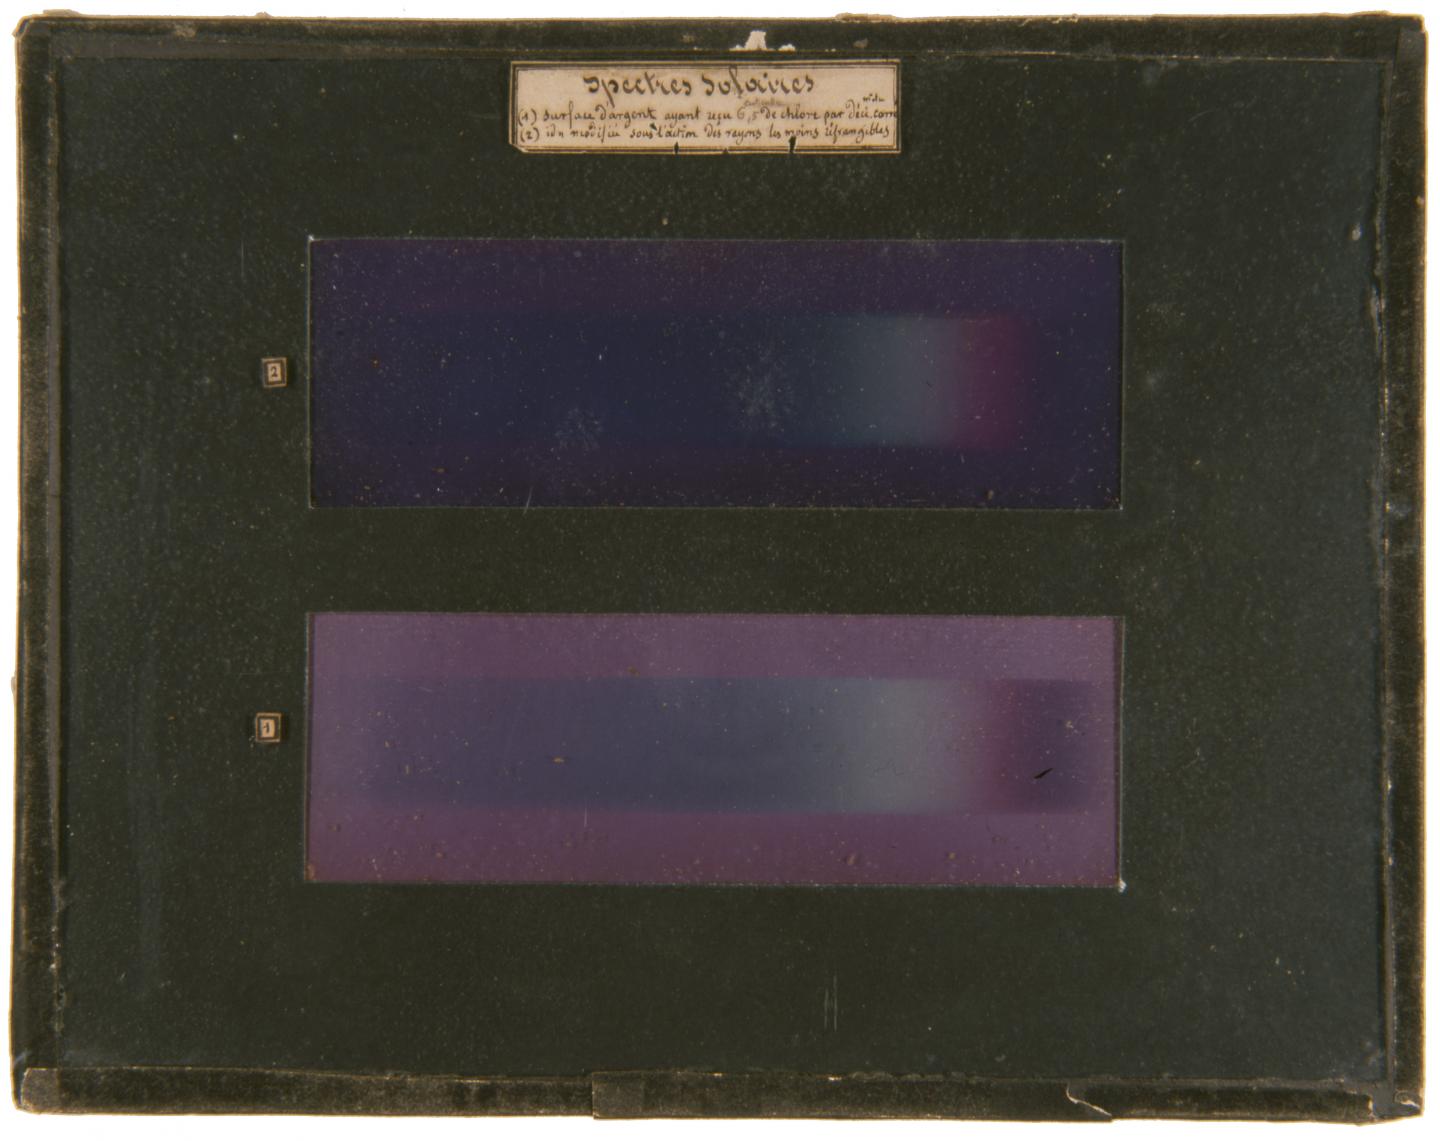 Edmond Becquerel, Spectres solaires, 1848, images photochromatiques, musée Nicéphore Niépce, Chalon-sur-Saône.